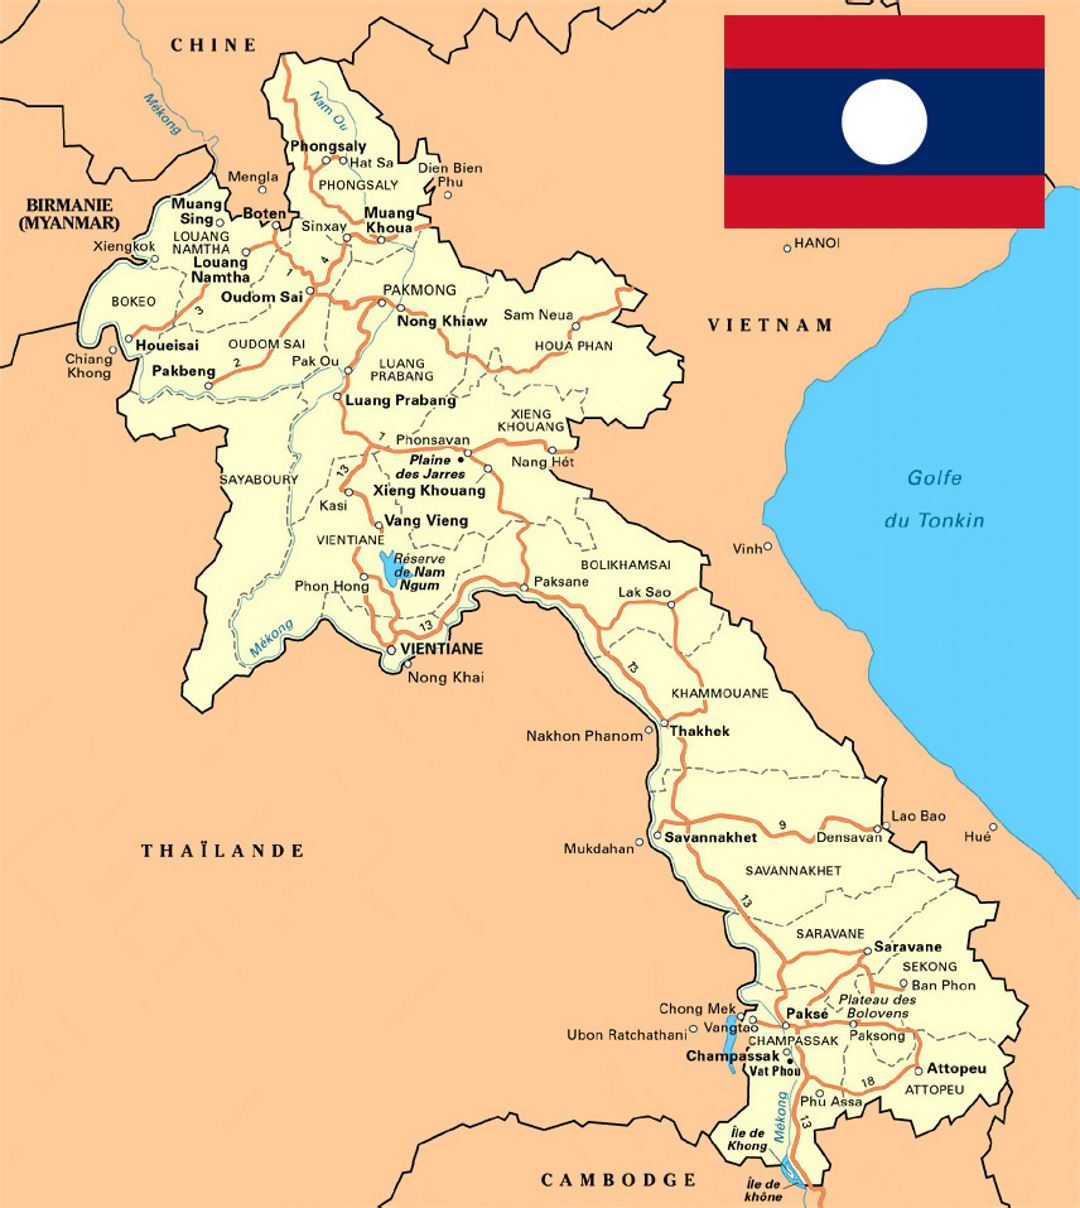 Детальная карта Лаоса с дорогами, городами и другими пометками